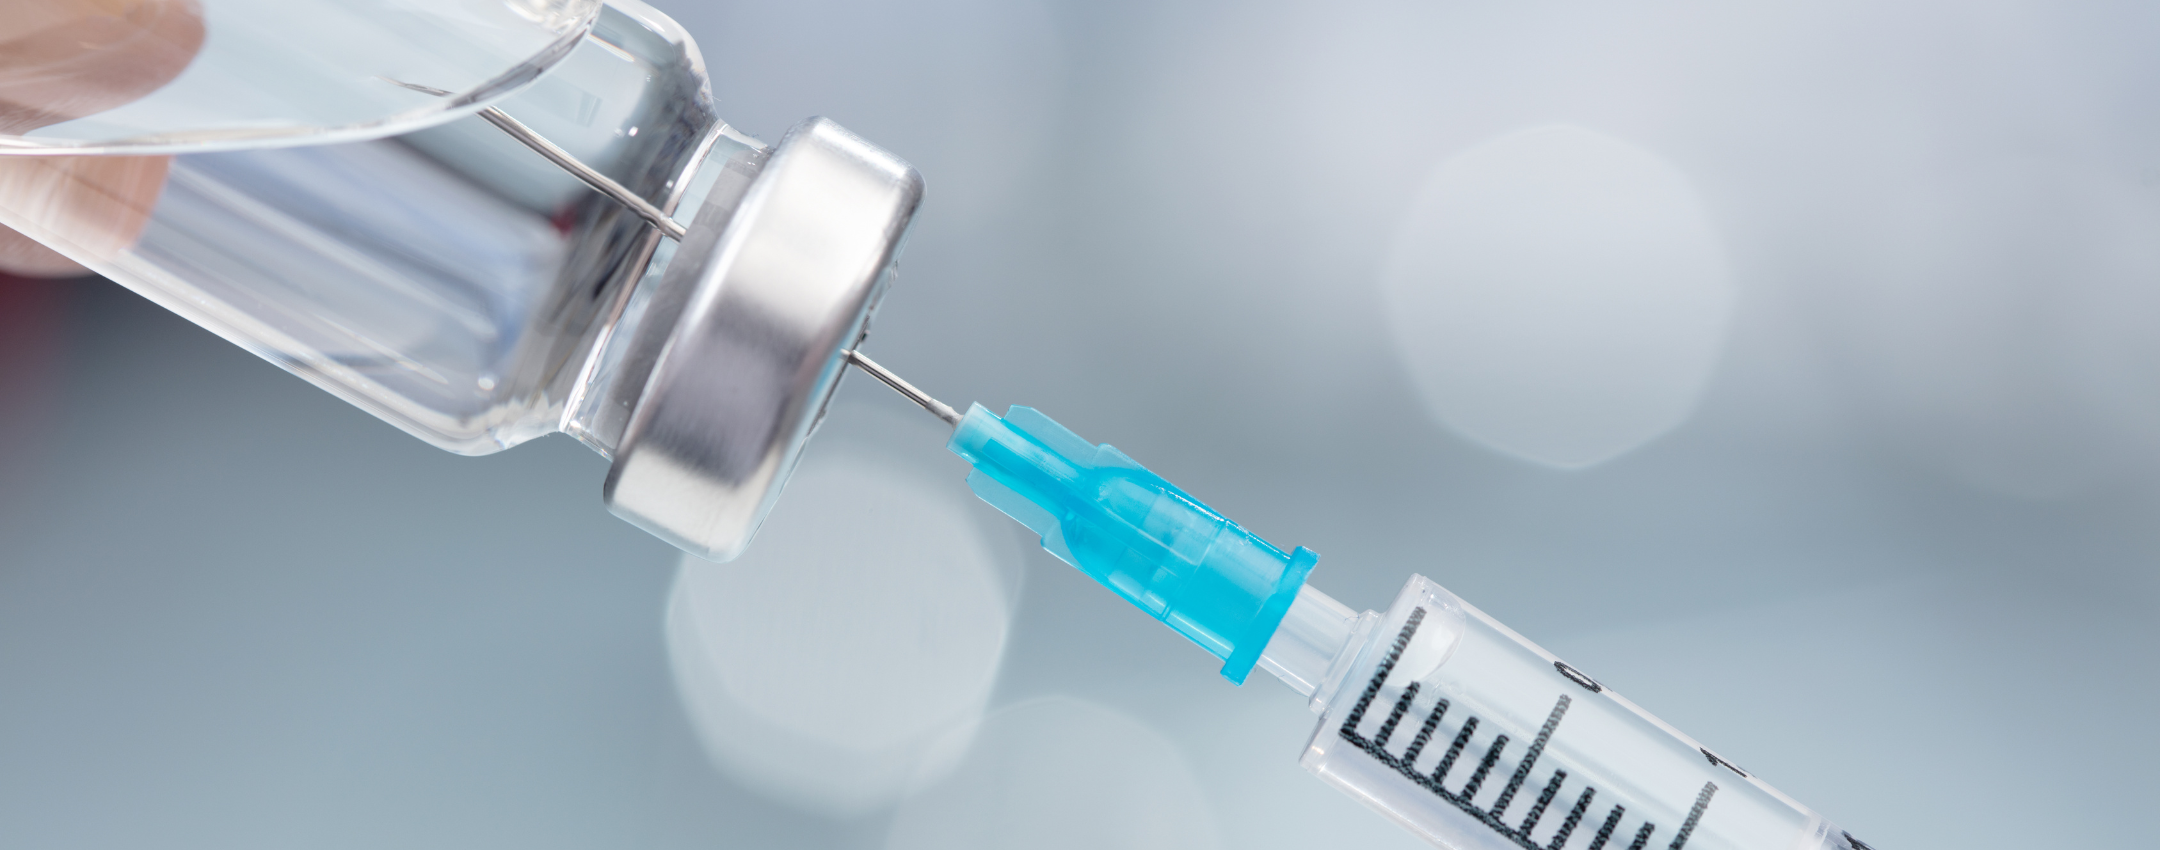 O que considerar na prescrição médica de injeção intracavernosa?